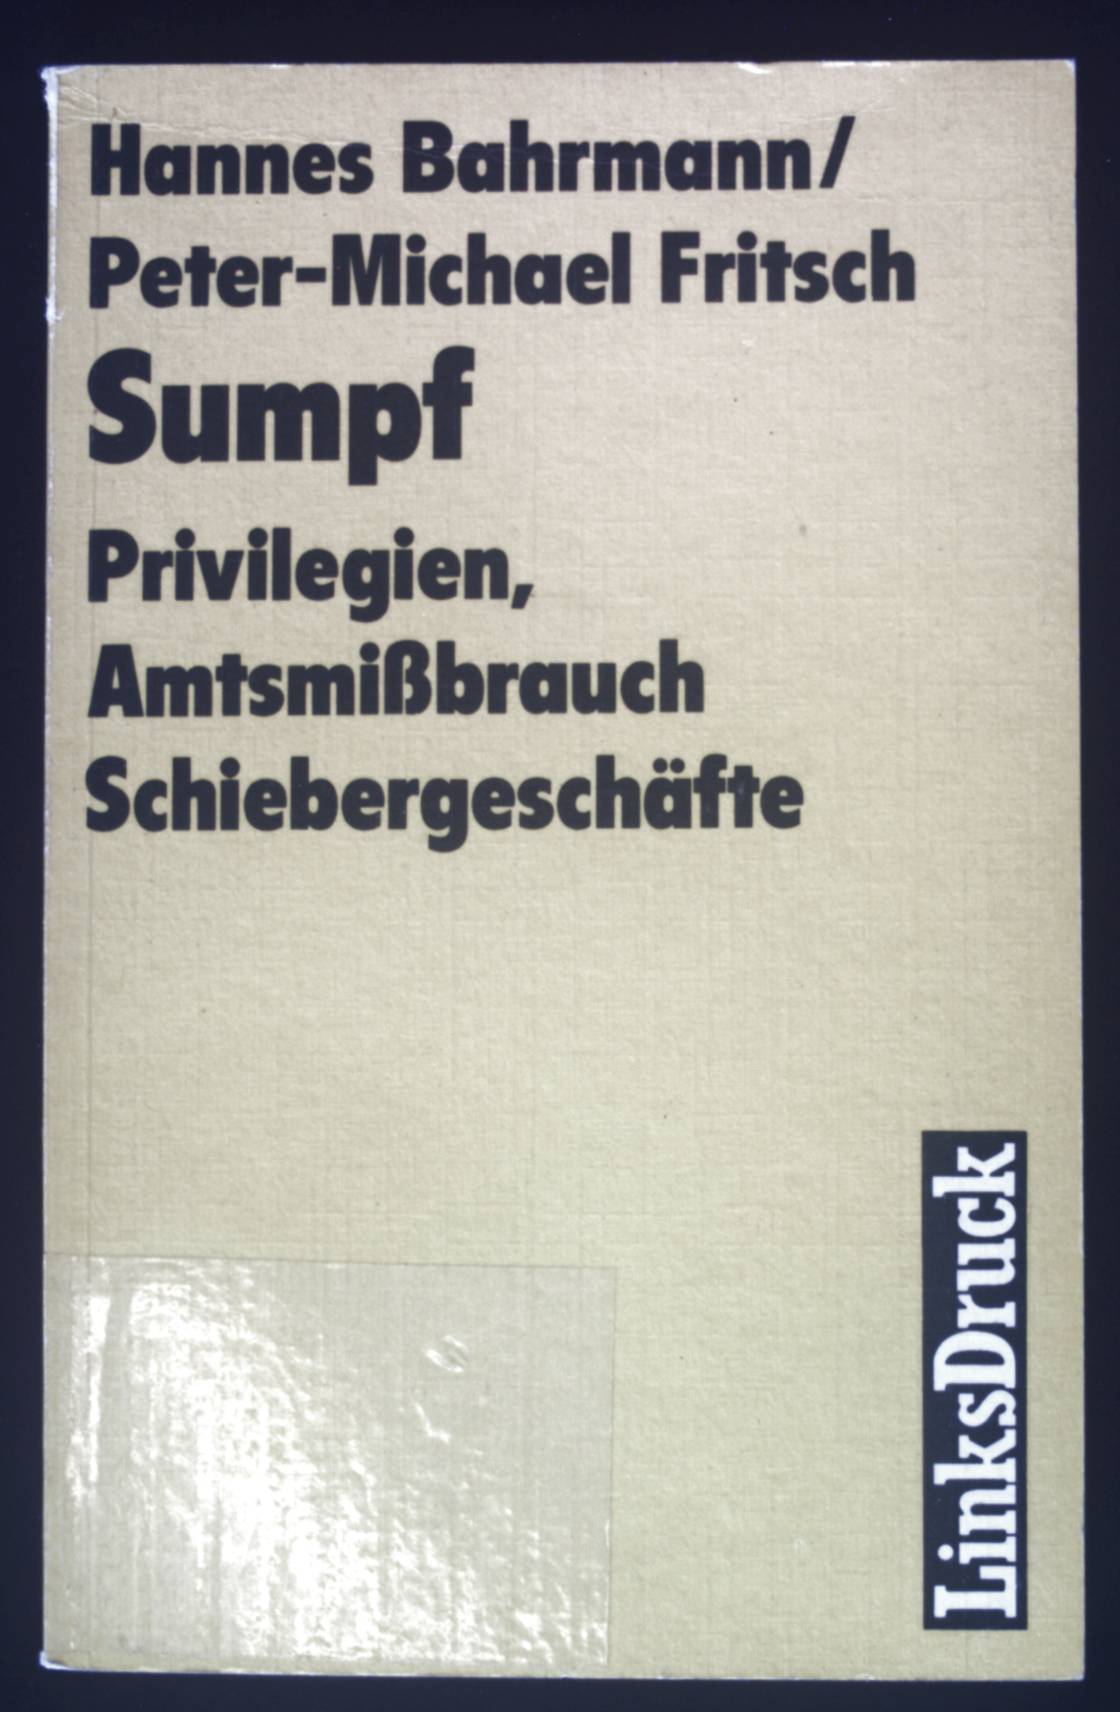 Sumpf : Privilegien, Amtsmissbrauch, Schiebergeschäfte. - Bahrmann, Hannes und Peter M. Fritsch